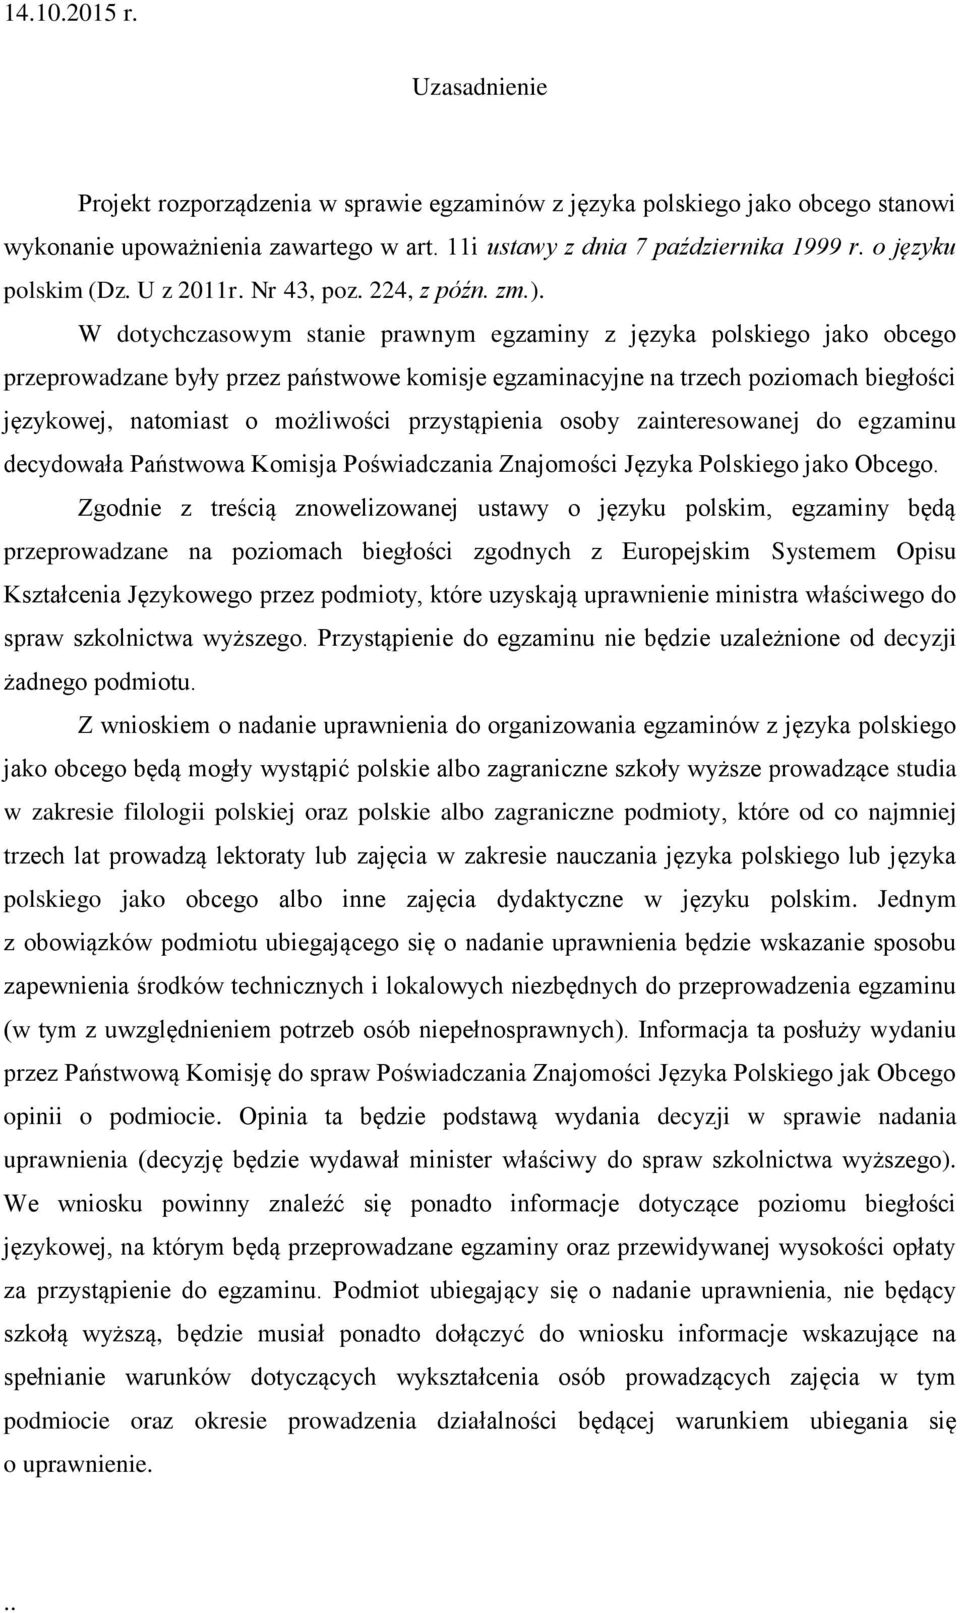 W dotychczasowym stanie prawnym egzaminy z języka polskiego jako obcego przeprowadzane były przez państwowe komisje egzaminacyjne na trzech poziomach biegłości językowej, natomiast o możliwości